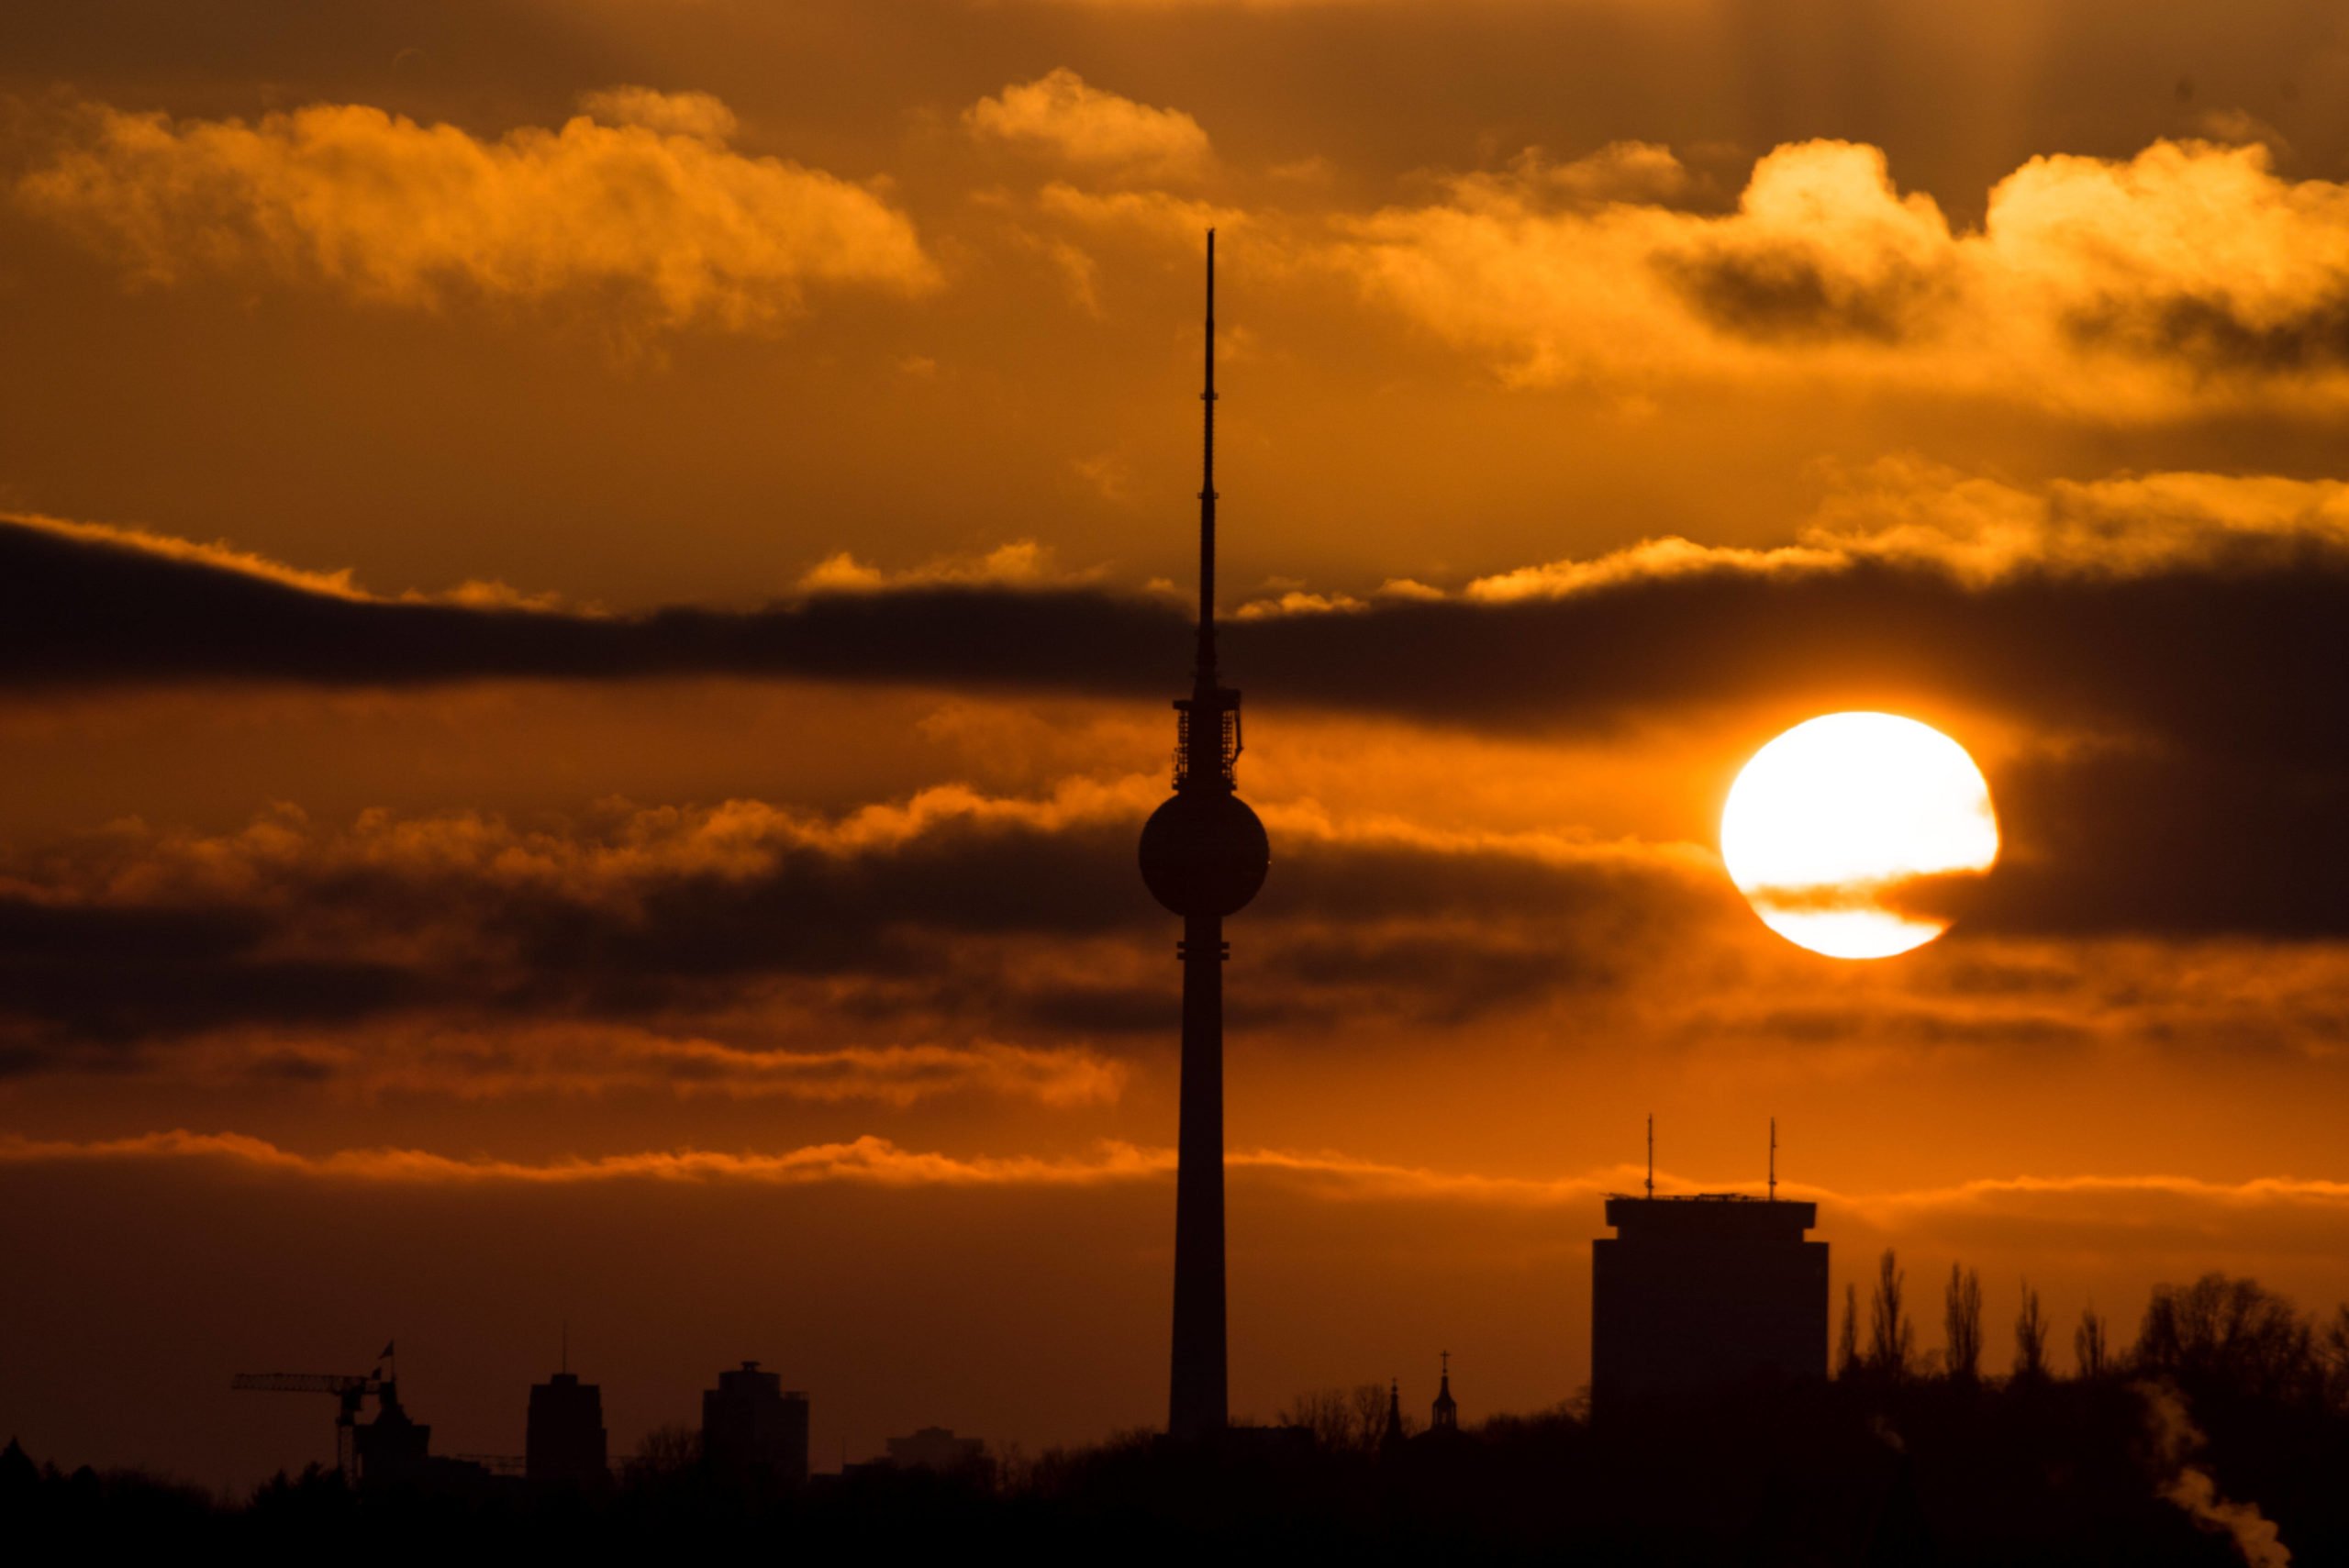 Berlin bekannt für: Markant zu jeder Tages- und Nachtzeit, der Berliner Fernsehturm. Foto: Imago/Christian Spicker